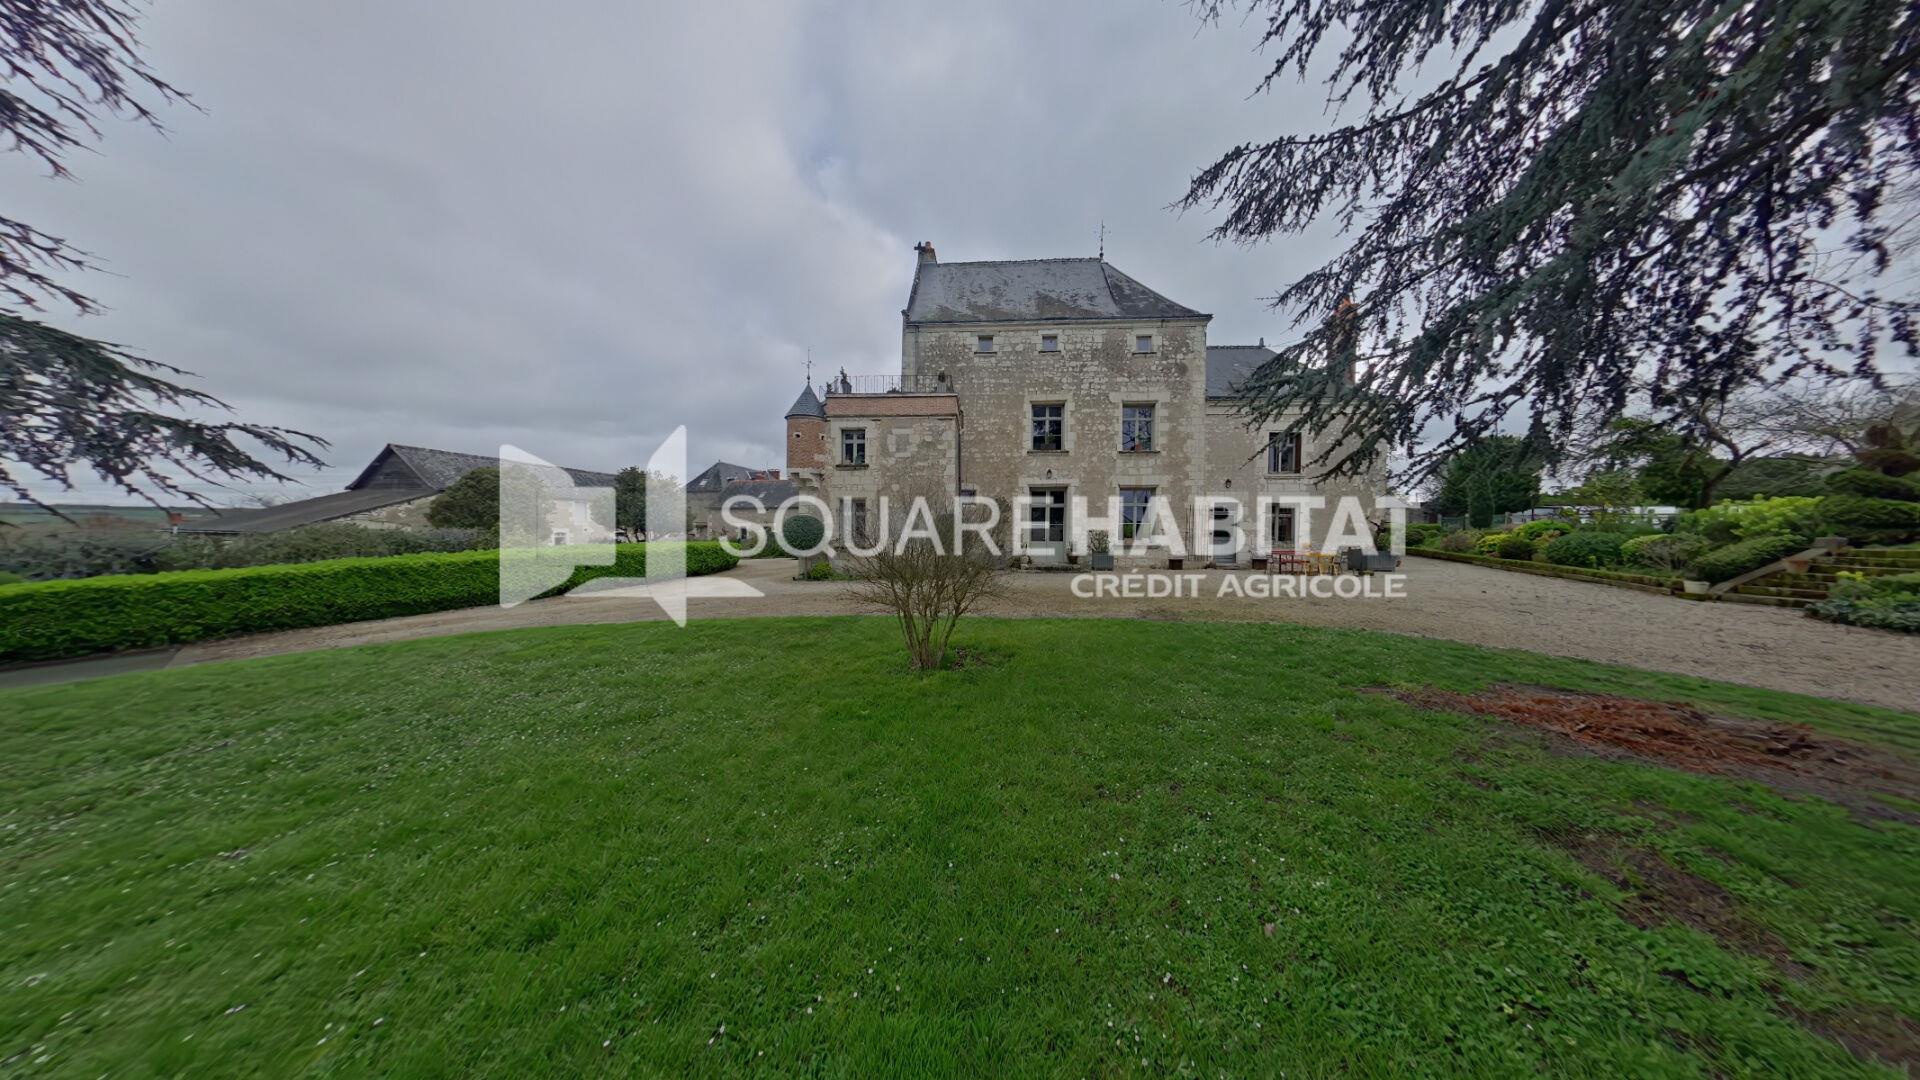 Chateau proche l'Ile Bouchard 400 m2 - 5 chambres - Gîtes - Parc - Piscine couverte